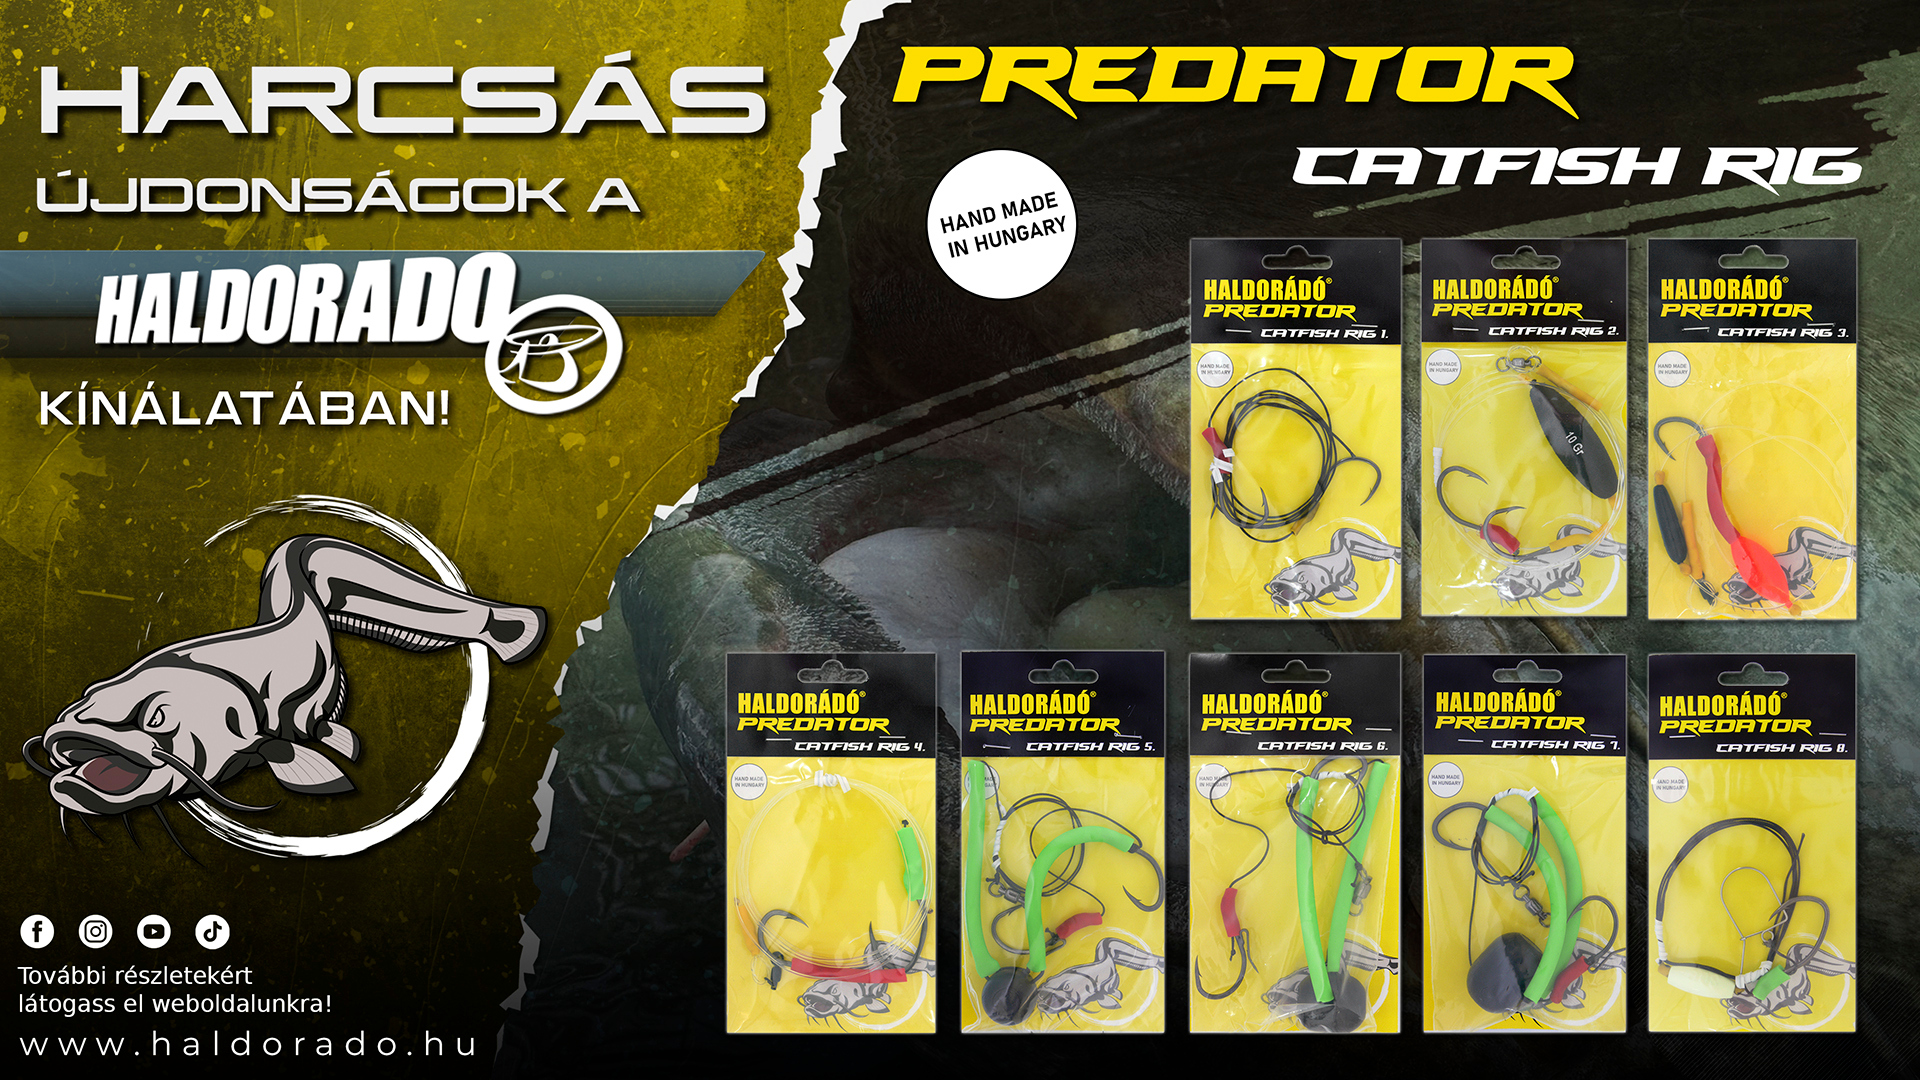 A Haldorádó Predator Catfish Rig kollekció professzionális, készre szerelt, a mai kor technikáihoz tervezett harcsázó előkéket kínál